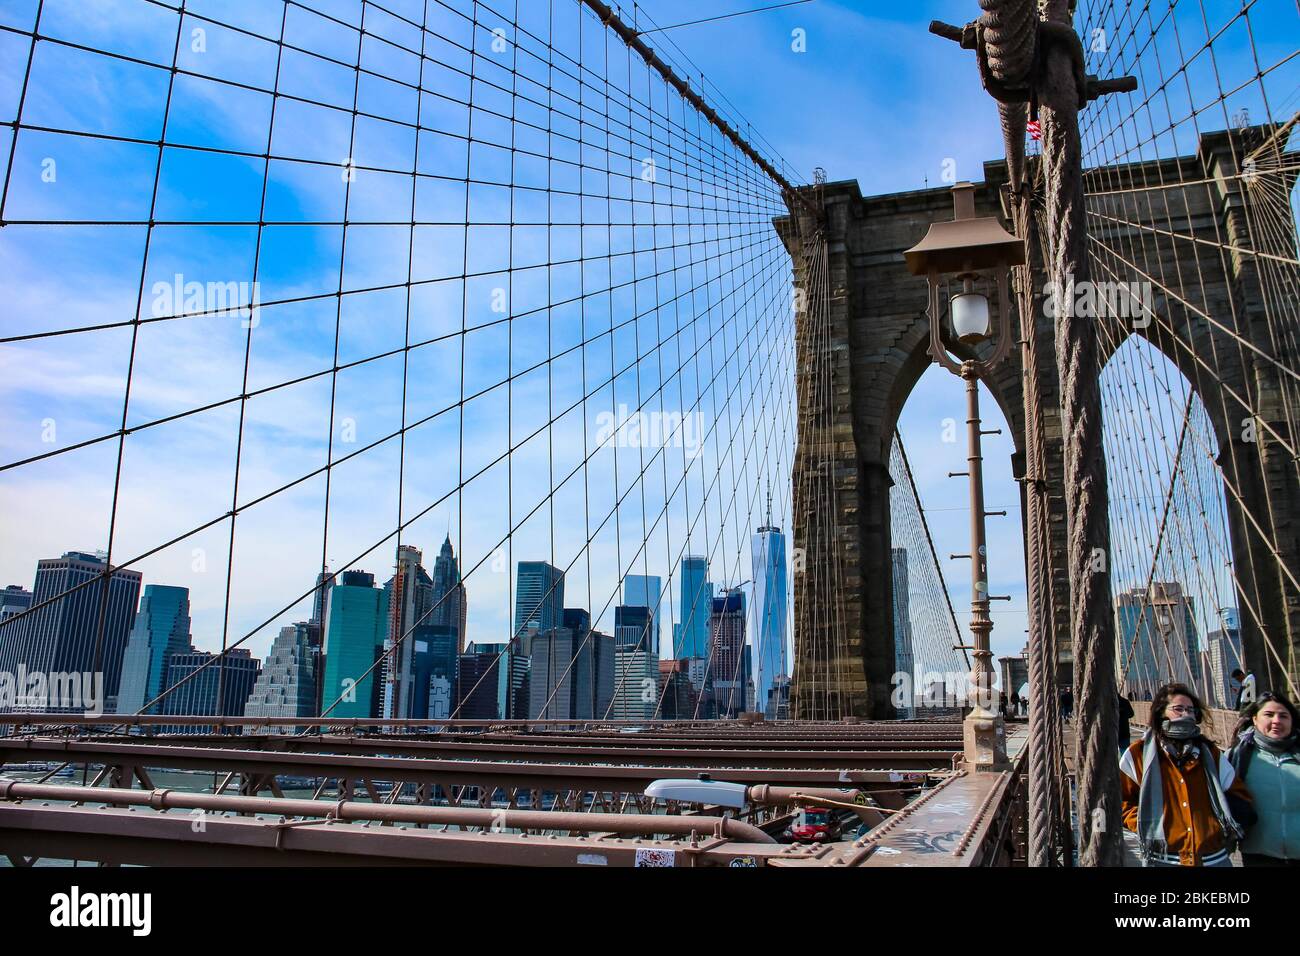 Traversée du pont de Brooklyn avec visite touristique et vue sur les gratte-ciel de Lower Manhattan avec le One World Trade Center. Banque D'Images